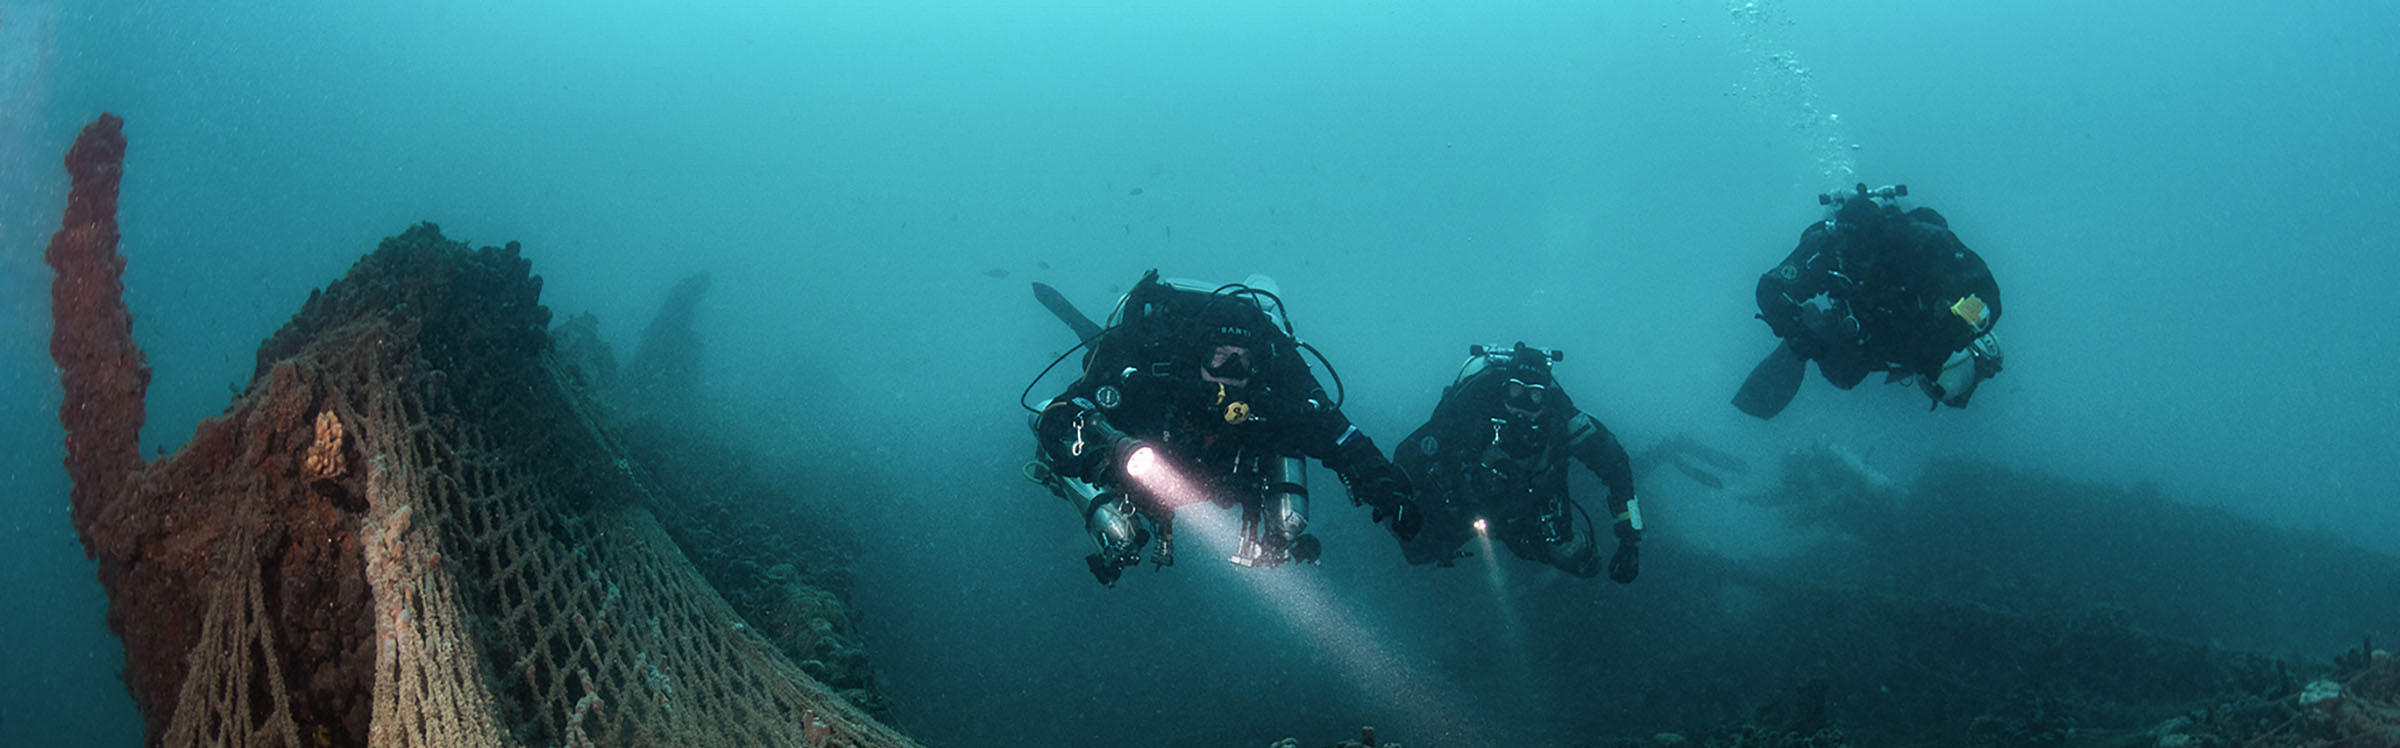 Technische duikers uit ons duikteam die in Kroatië technisch leren duiken op wrakken.